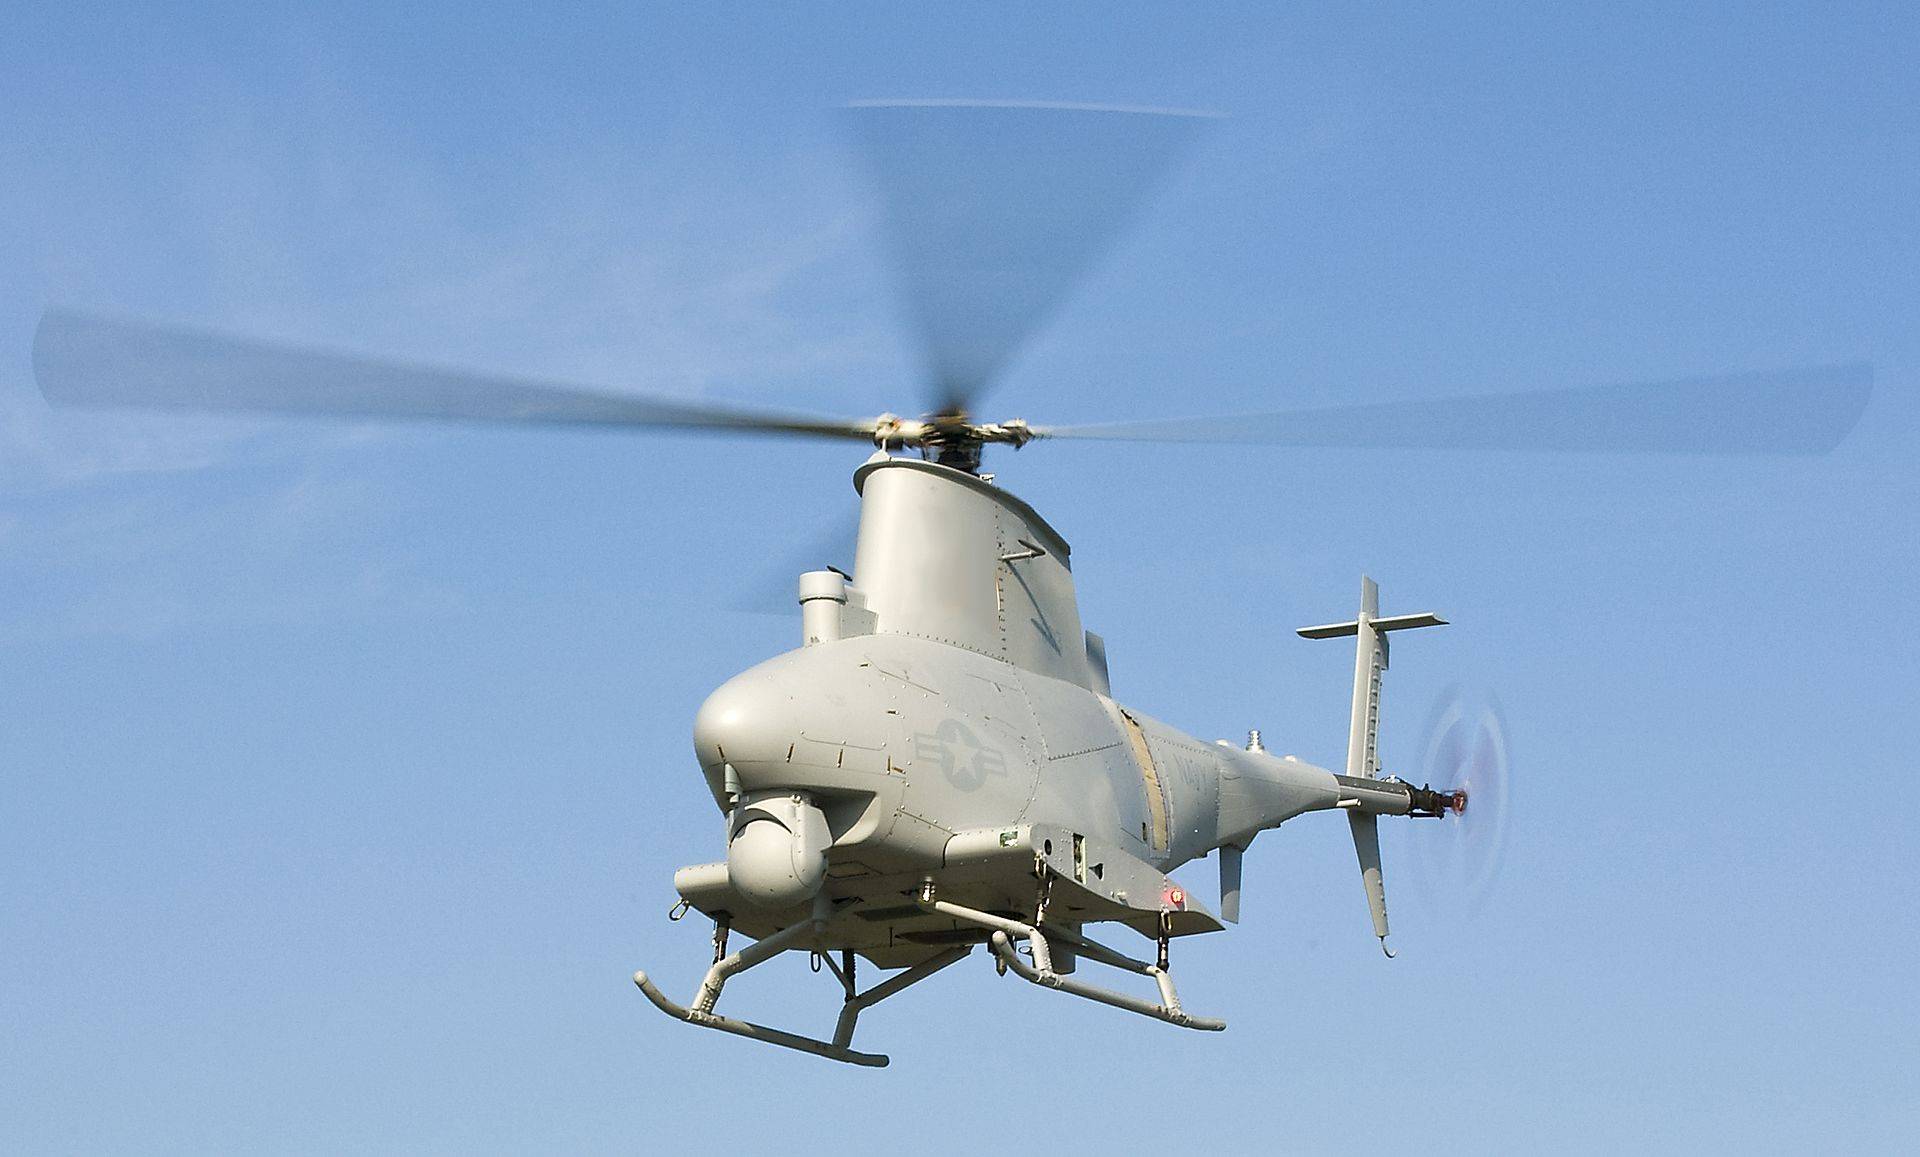 当然未来武装直升机并不只是上面列举的发展趋势,其它比如武装直升机